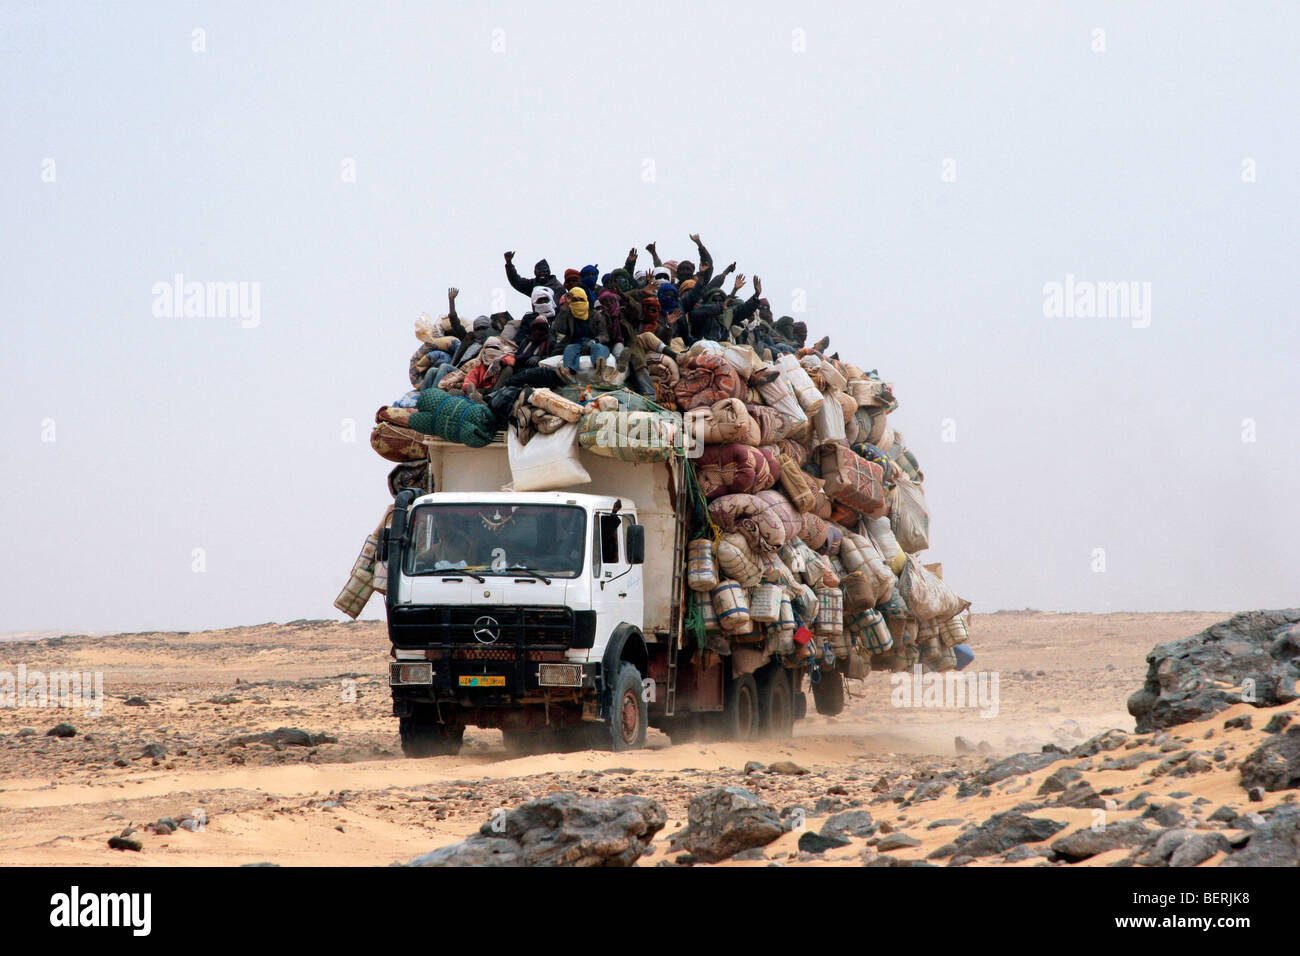 heavily-loaded-truck-transporting-goods-and-people-in-the-sahara-desert-BERJK8.jpg